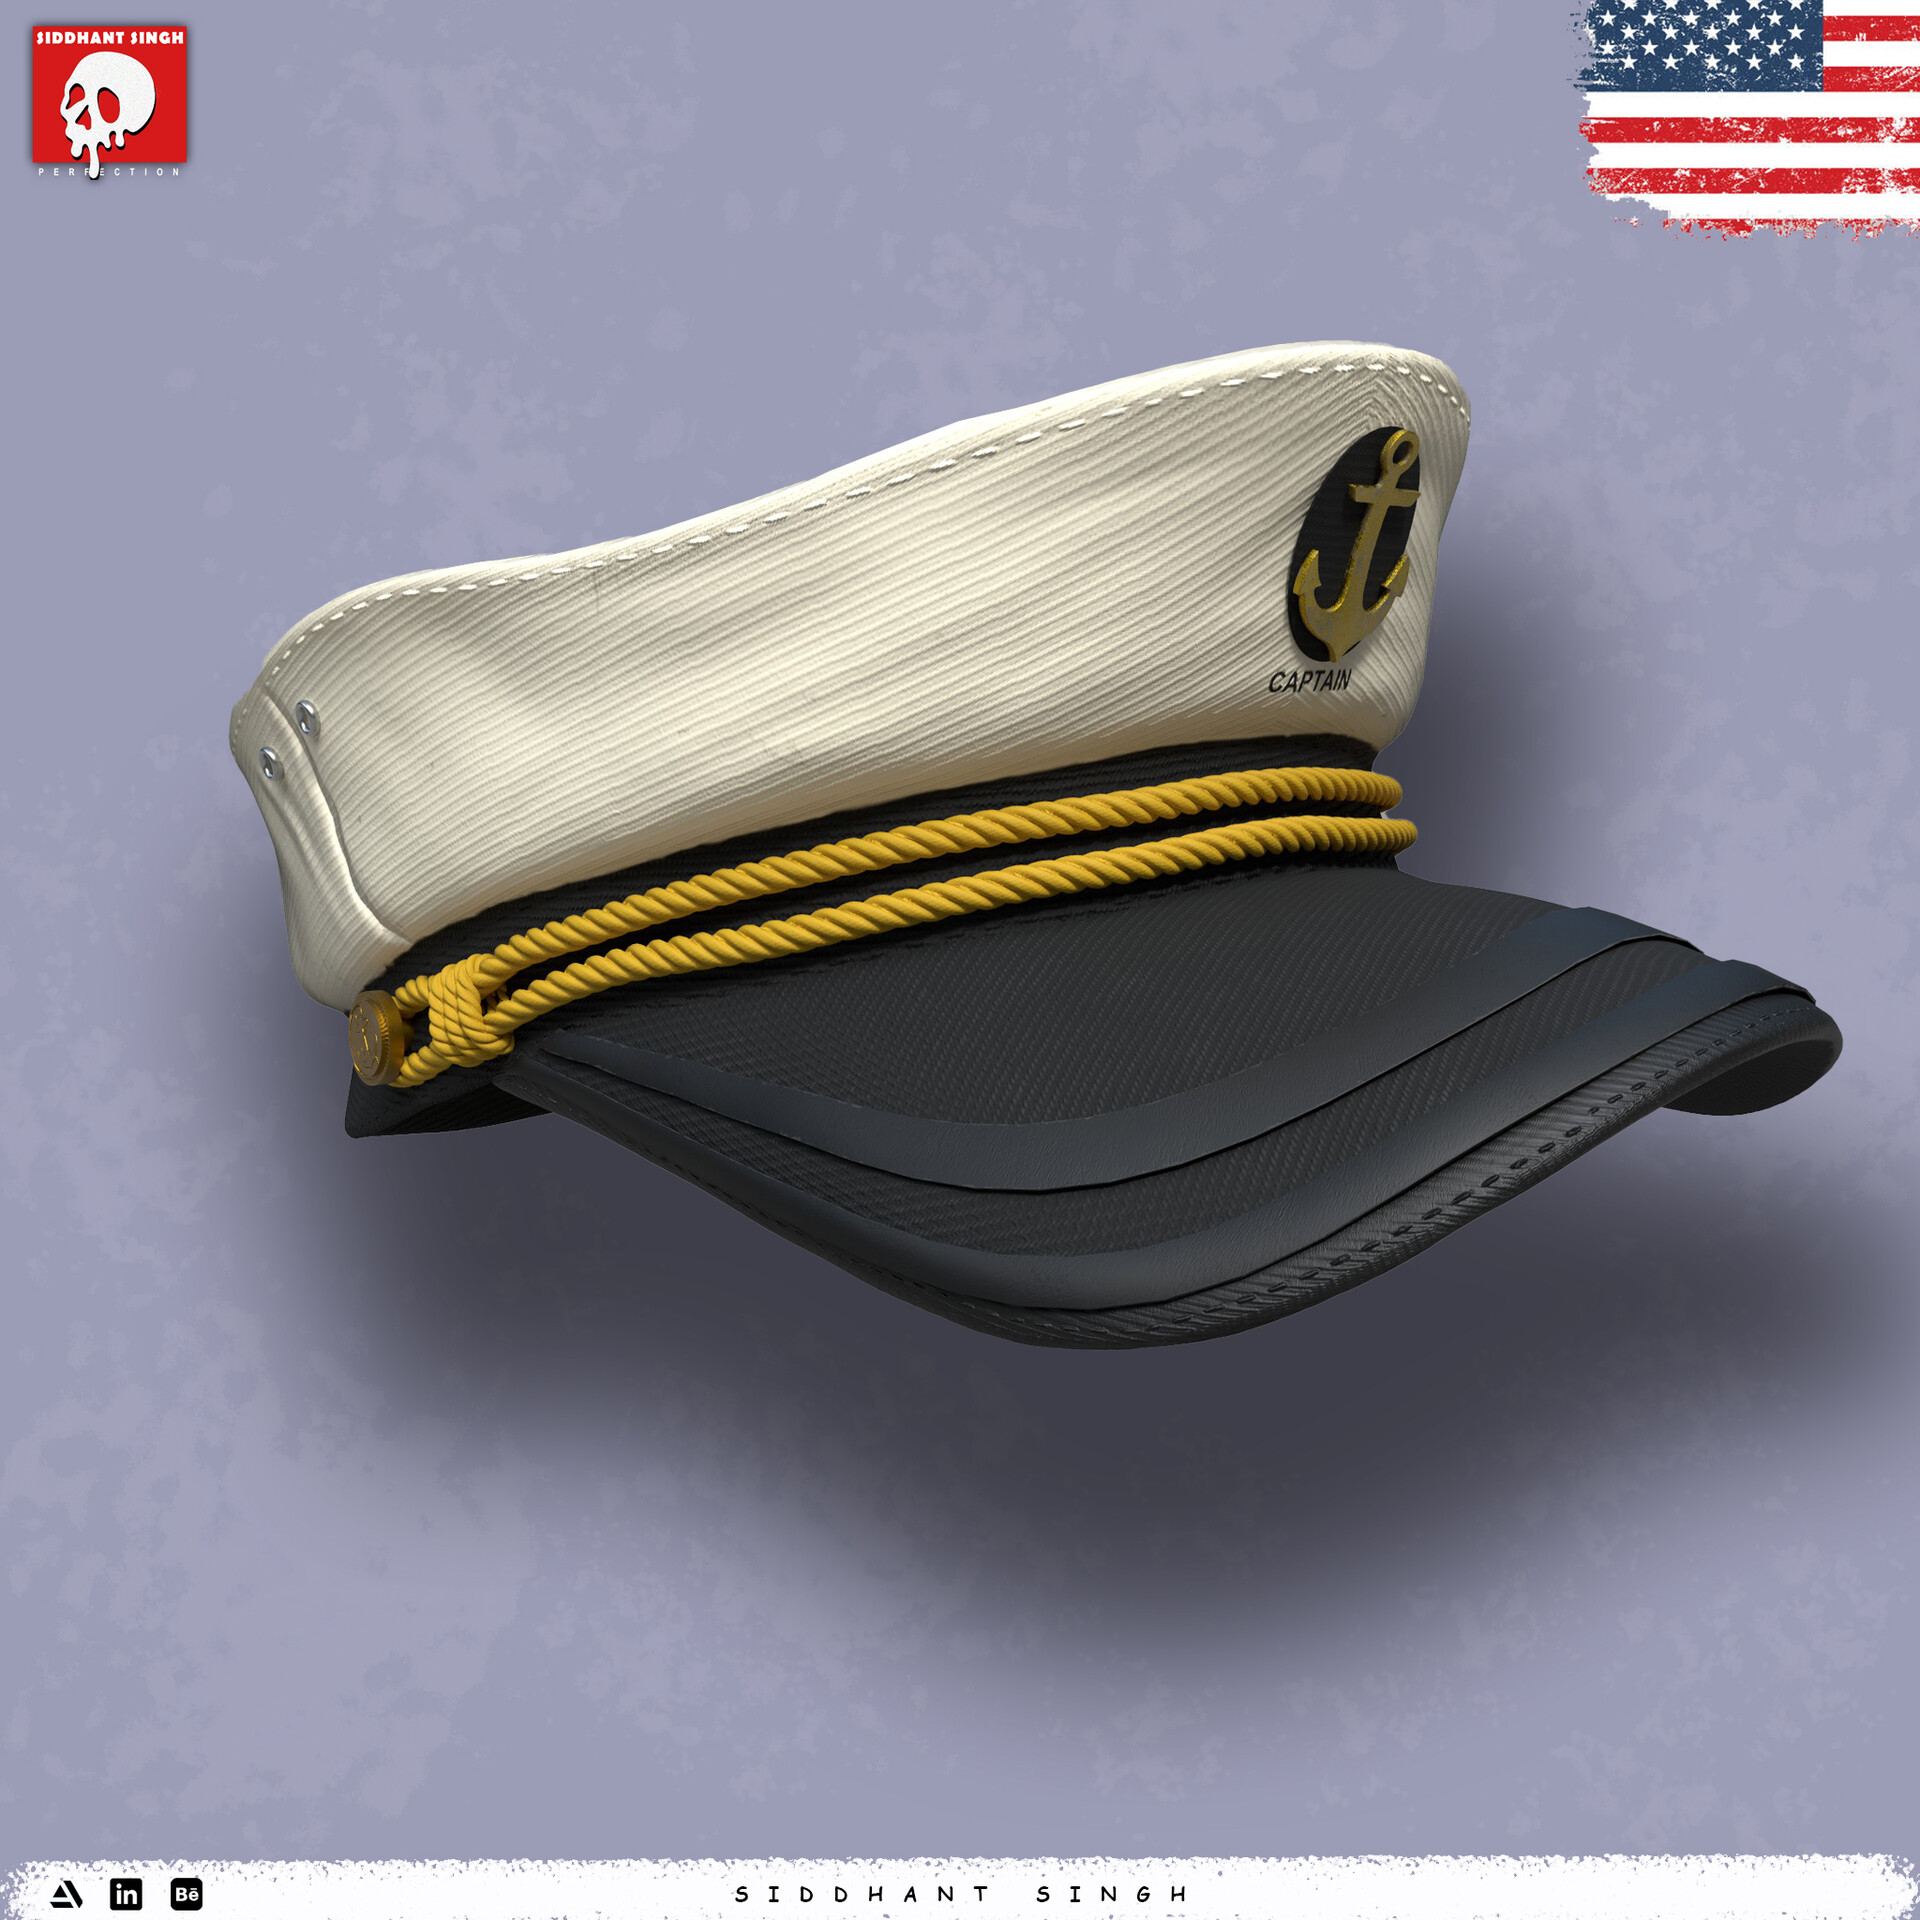 Captain Hat 3D model